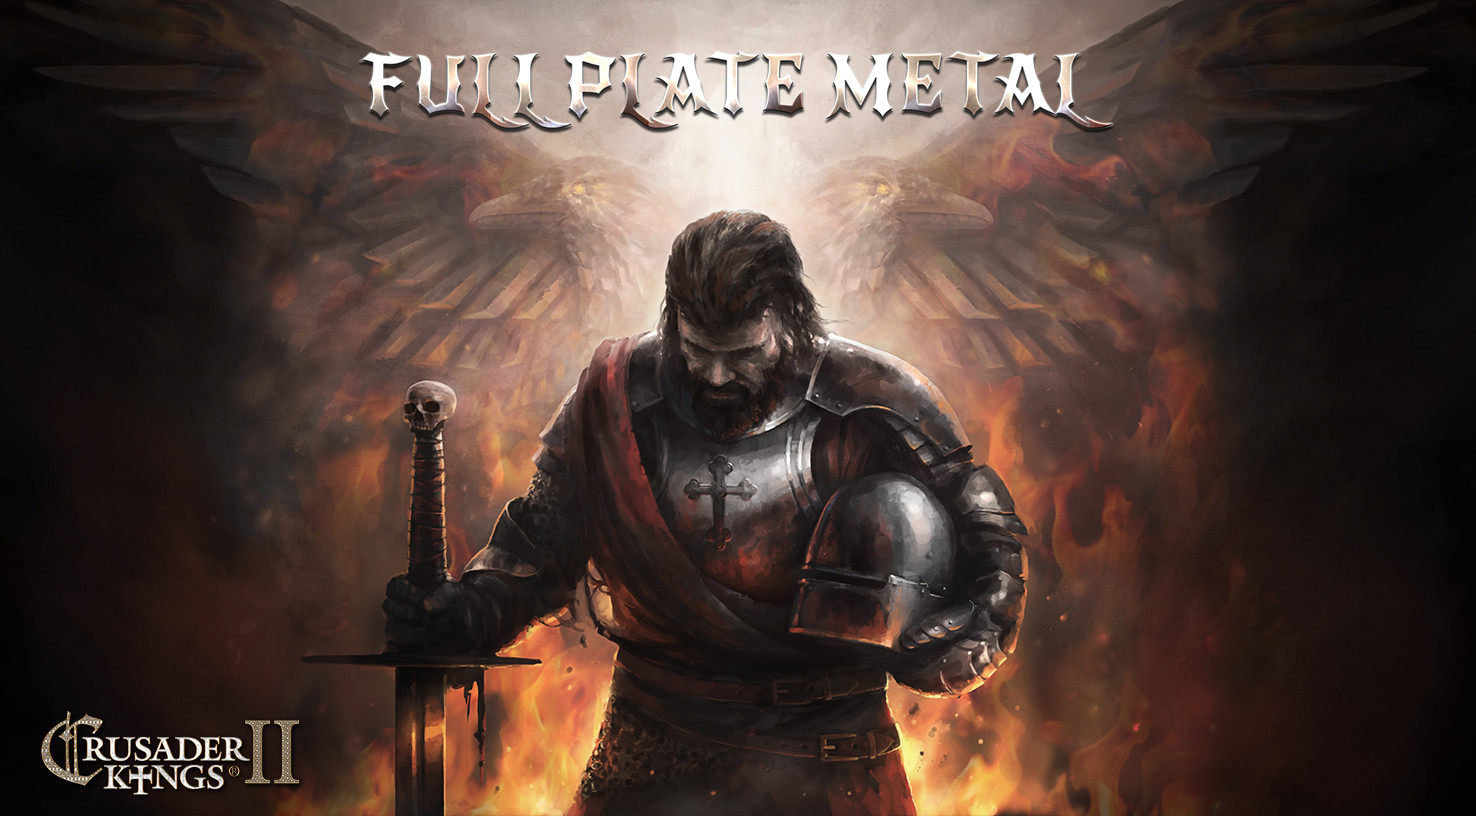 Crusader Kings II - Full Plate Metal DLC Steam CD Key 1.84 $